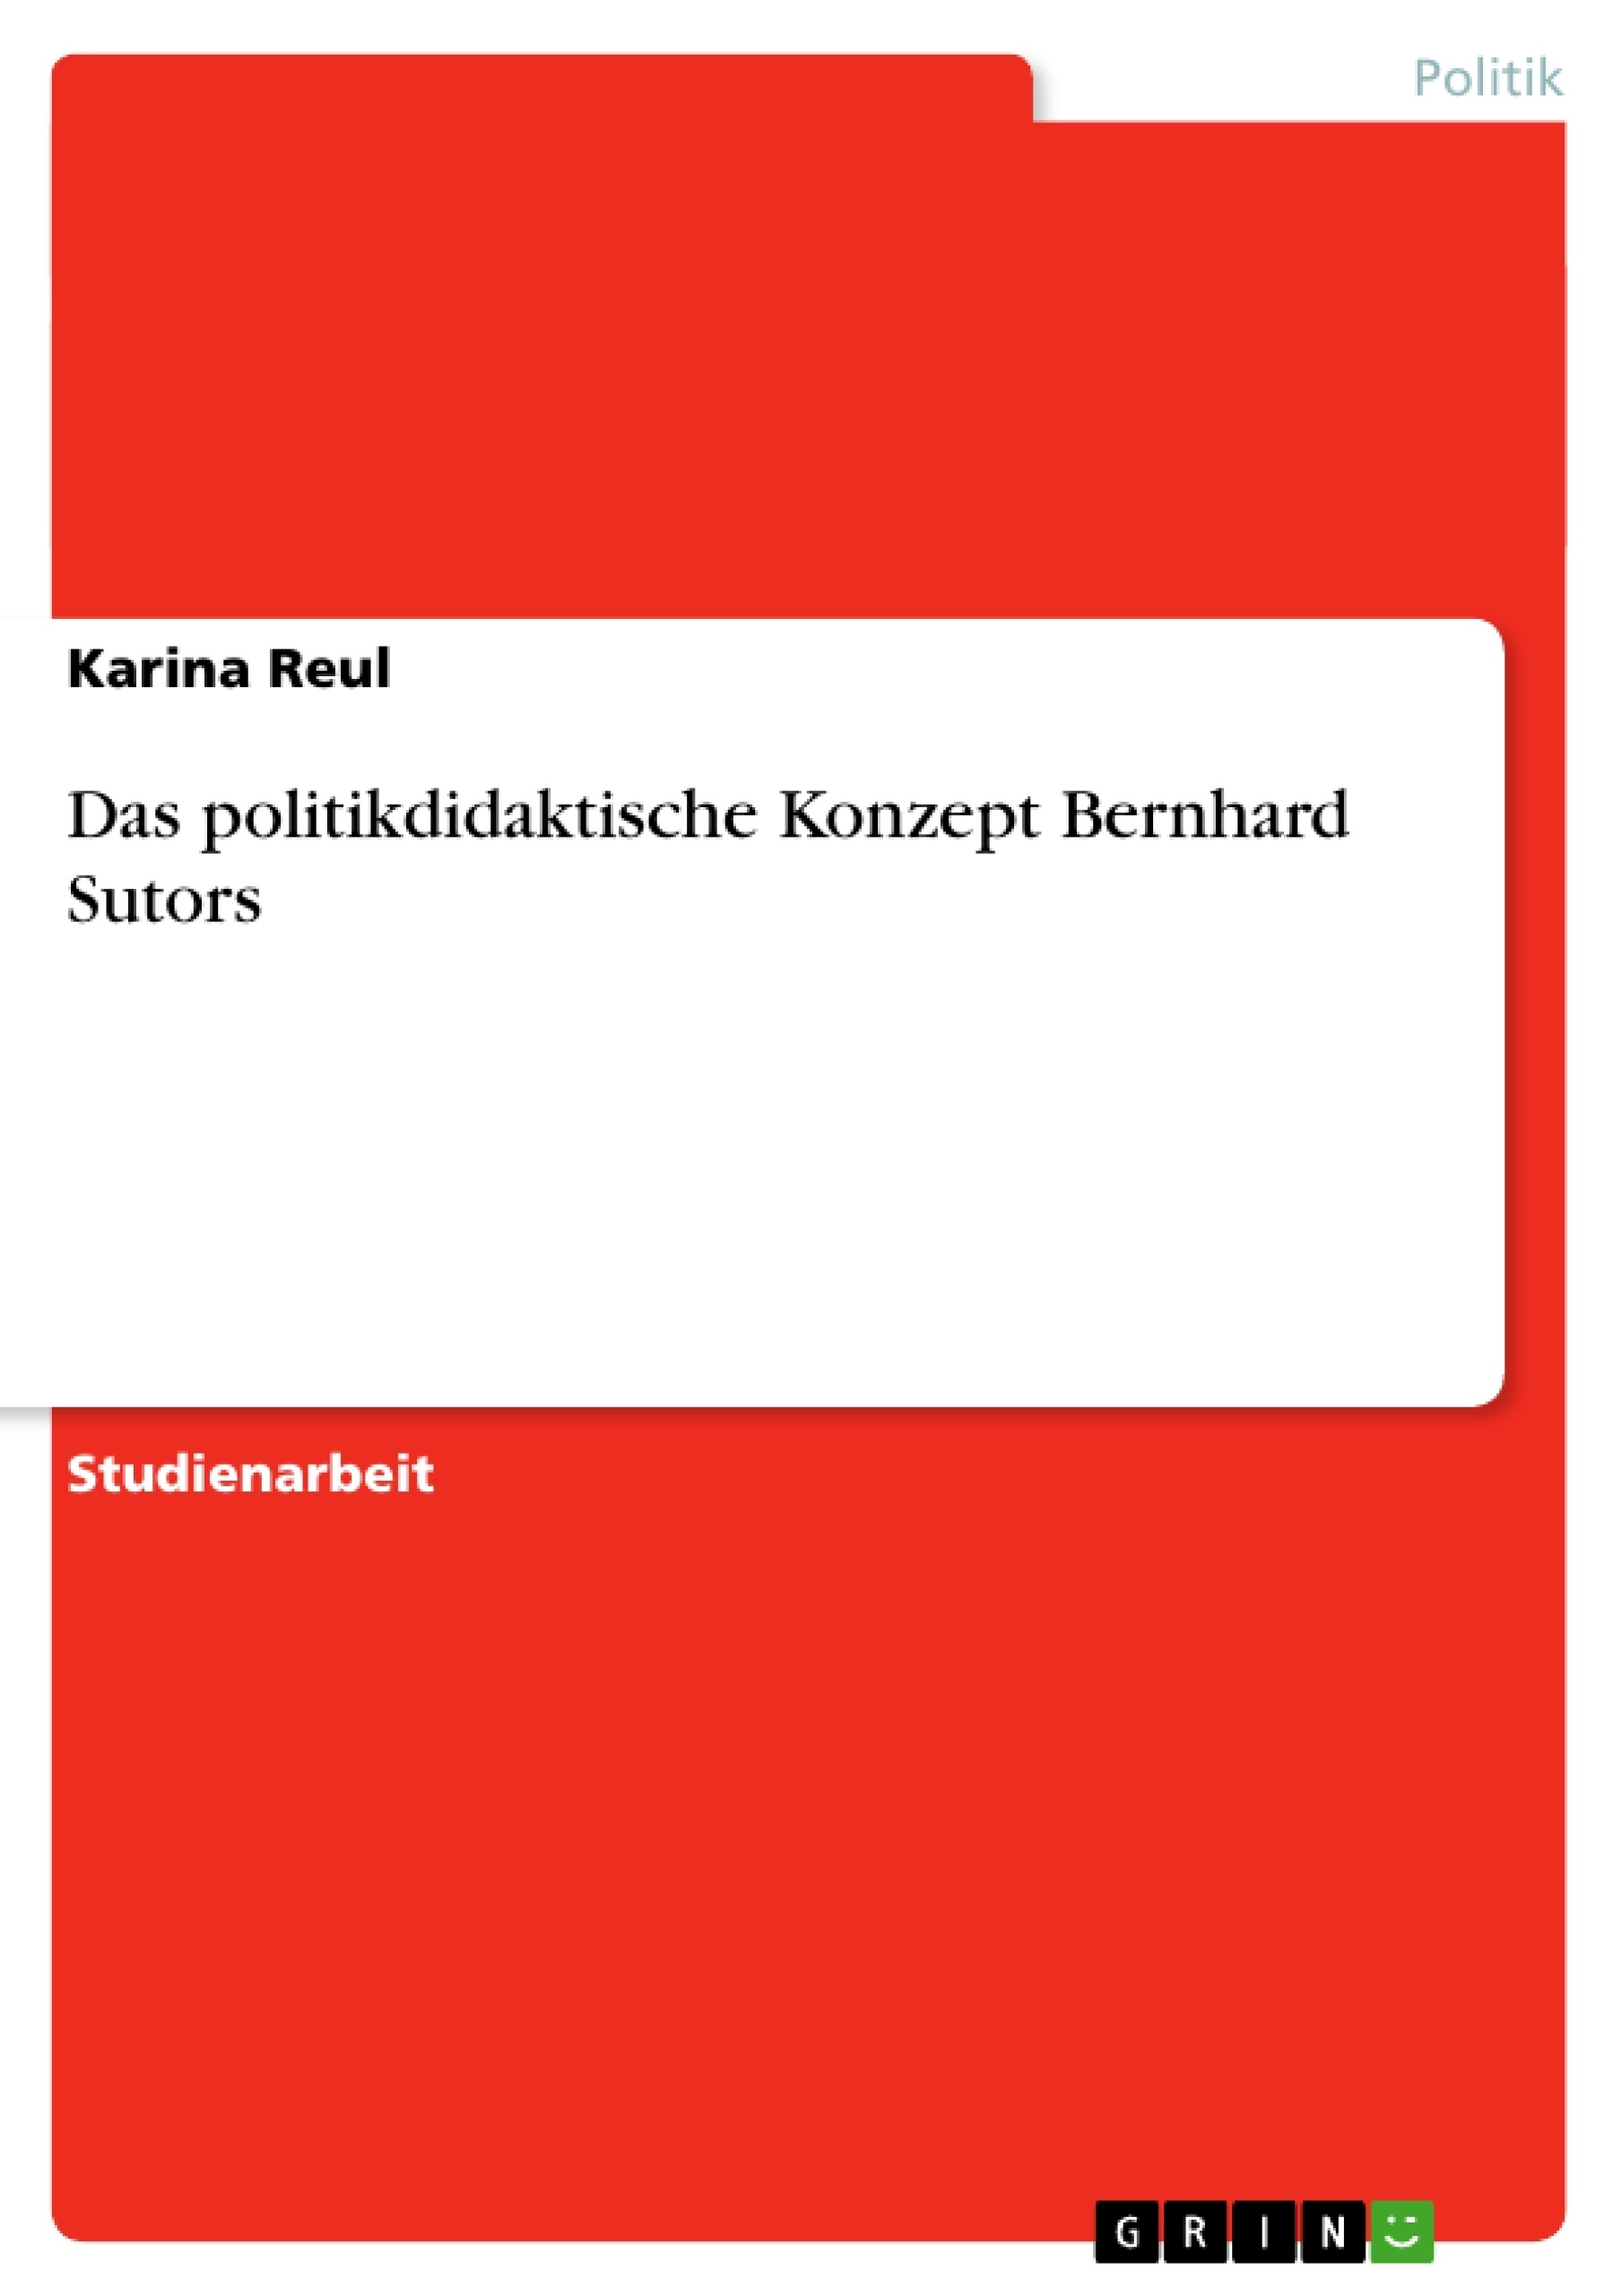 Title: Das politikdidaktische Konzept Bernhard Sutors